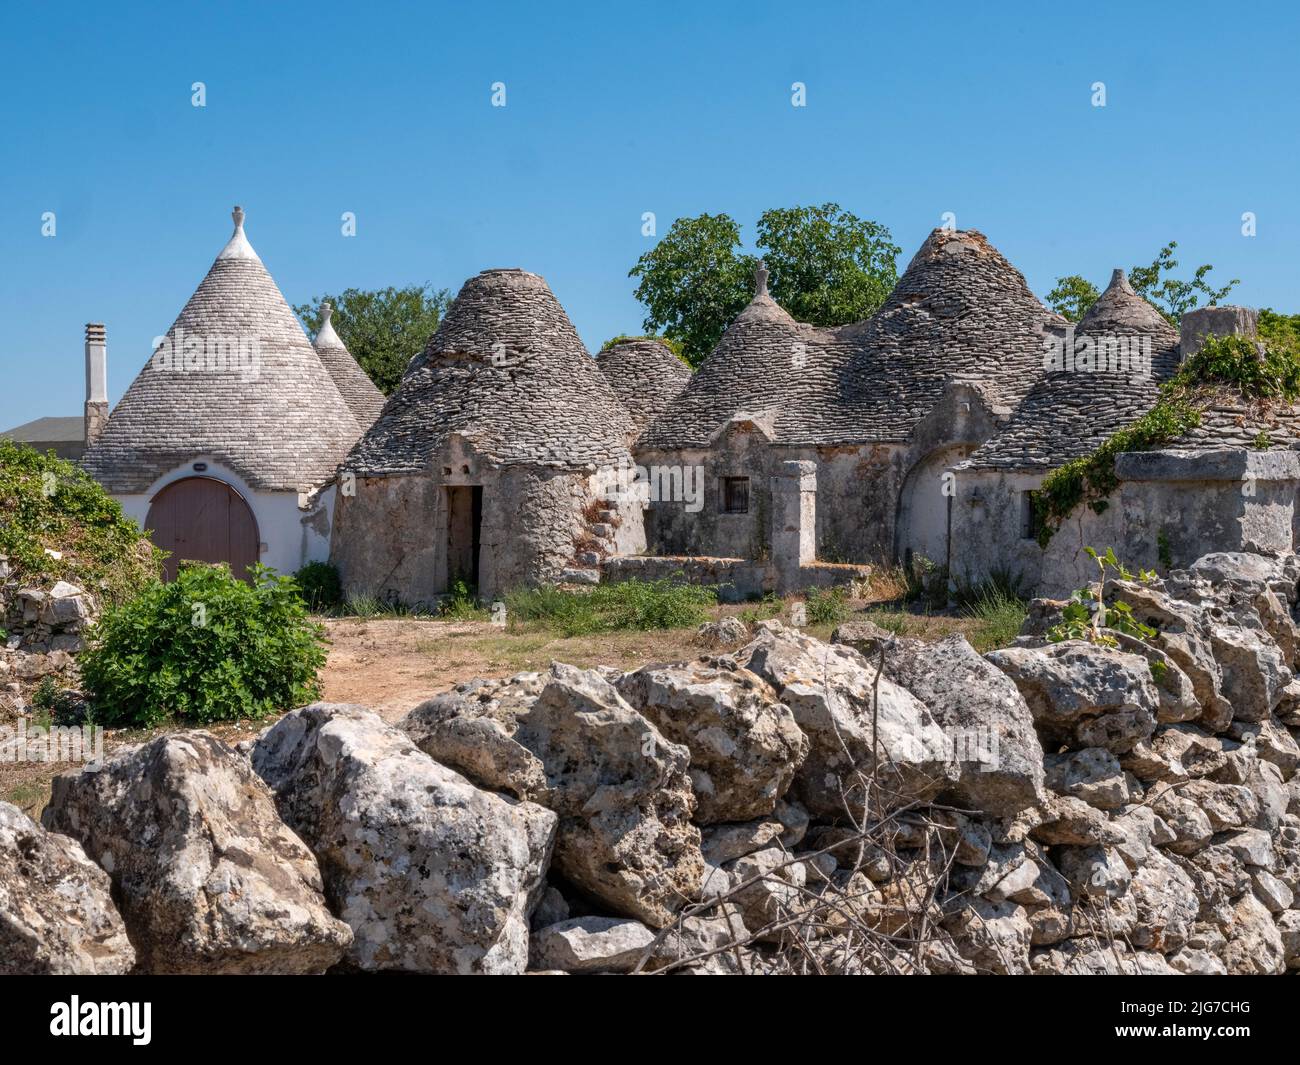 Trulli case della regione Puglia di Alberobello con tetti conici originari di epoca preistorica realizzati in massi calcarei e senza mortar Foto Stock